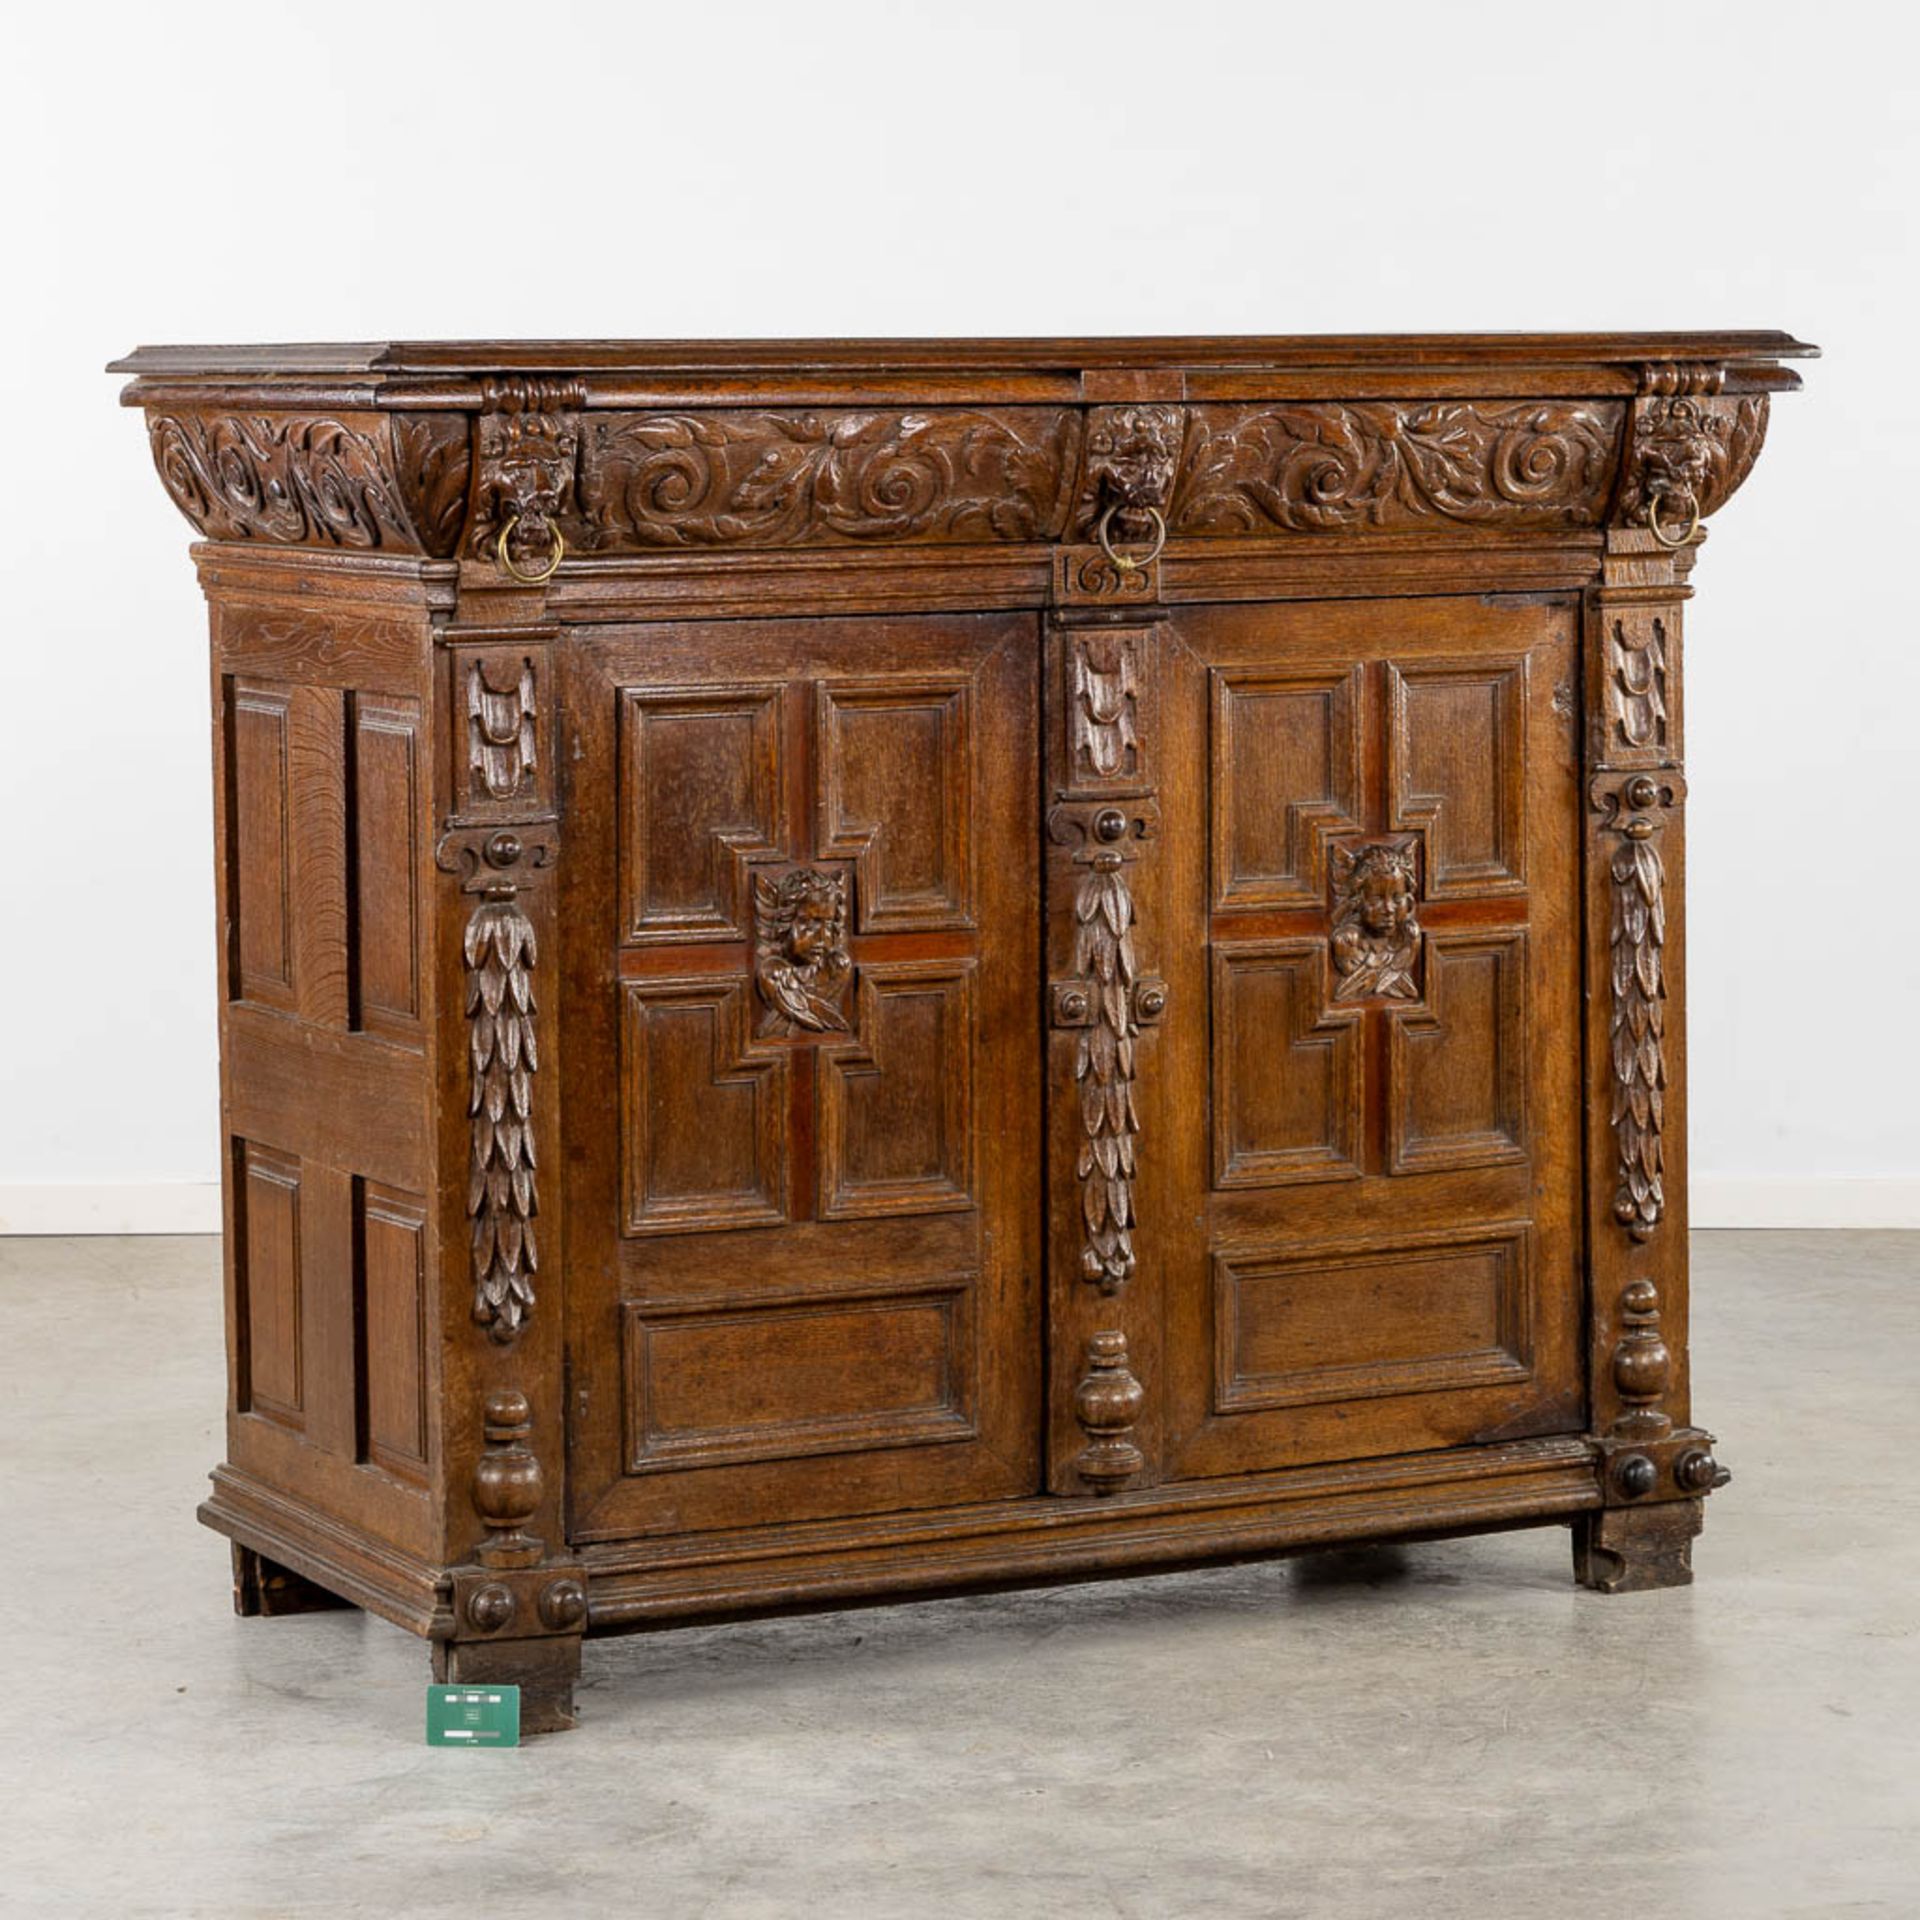 A cabinet, Flemish Renaissance, 17h C. (L:69 x W:158 x H:127 cm) - Image 2 of 18